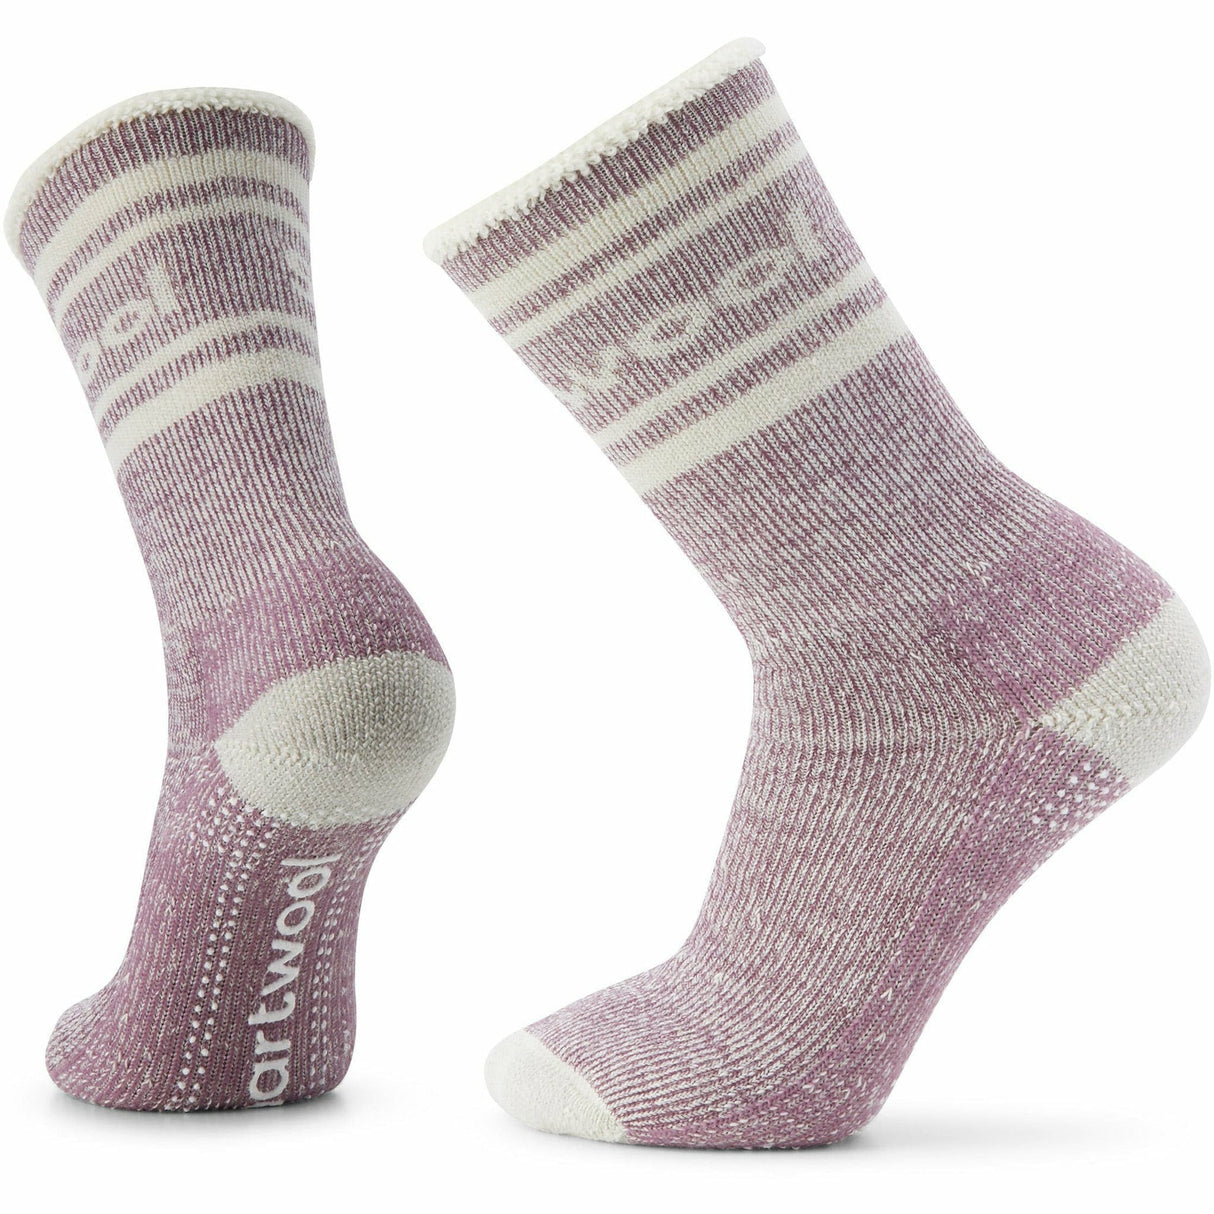 Smartwool Everyday Slipper Sock Crew Socks  -  Large / Bordeaux